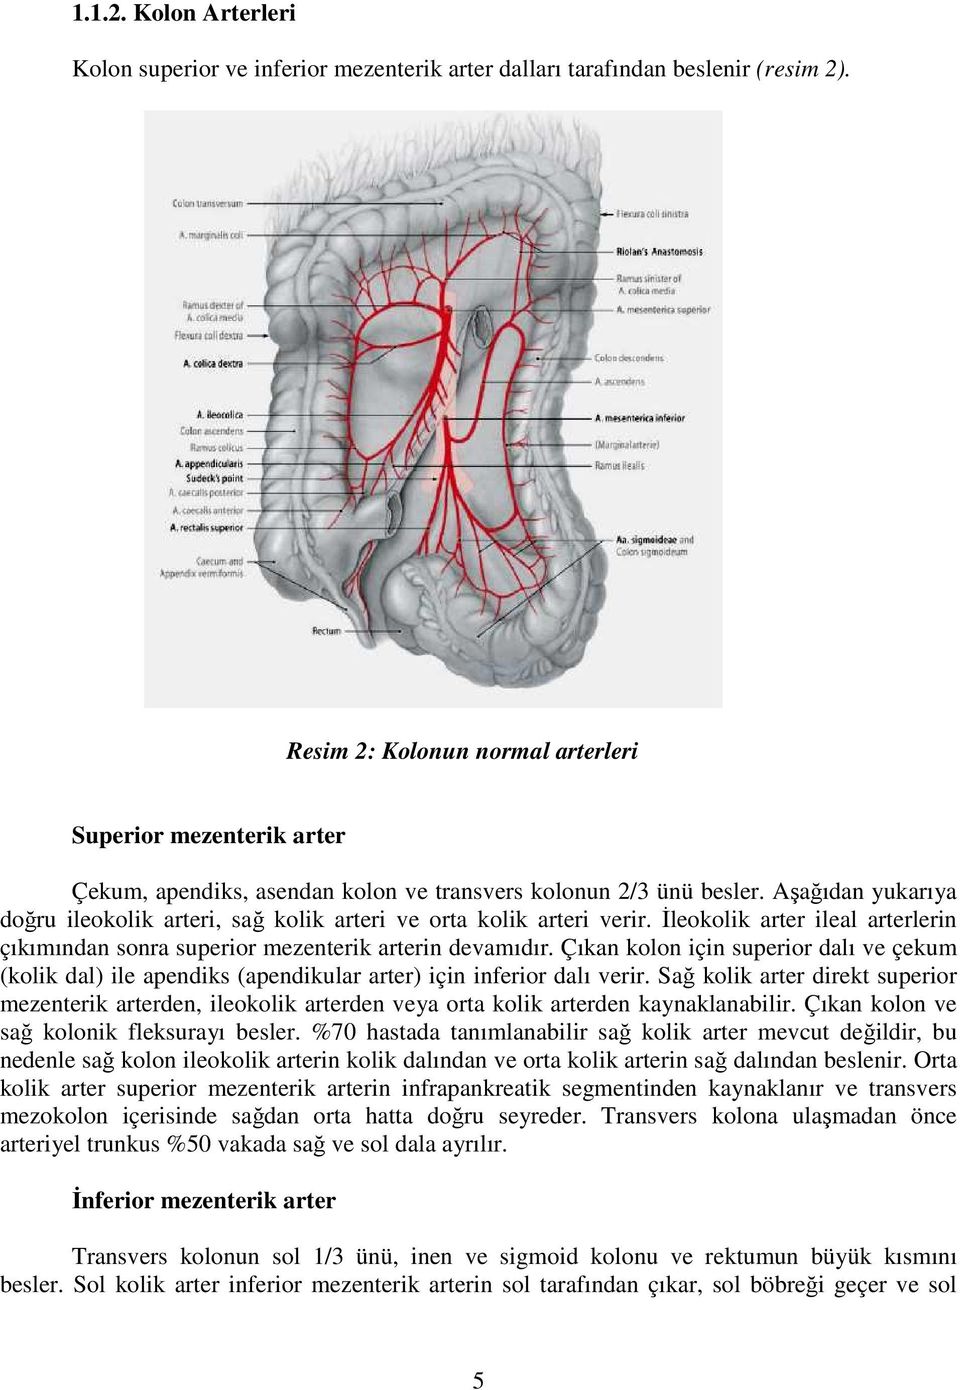 Aşağıdan yukarıya doğru ileokolik arteri, sağ kolik arteri ve orta kolik arteri verir. Đleokolik arter ileal arterlerin çıkımından sonra superior mezenterik arterin devamıdır.